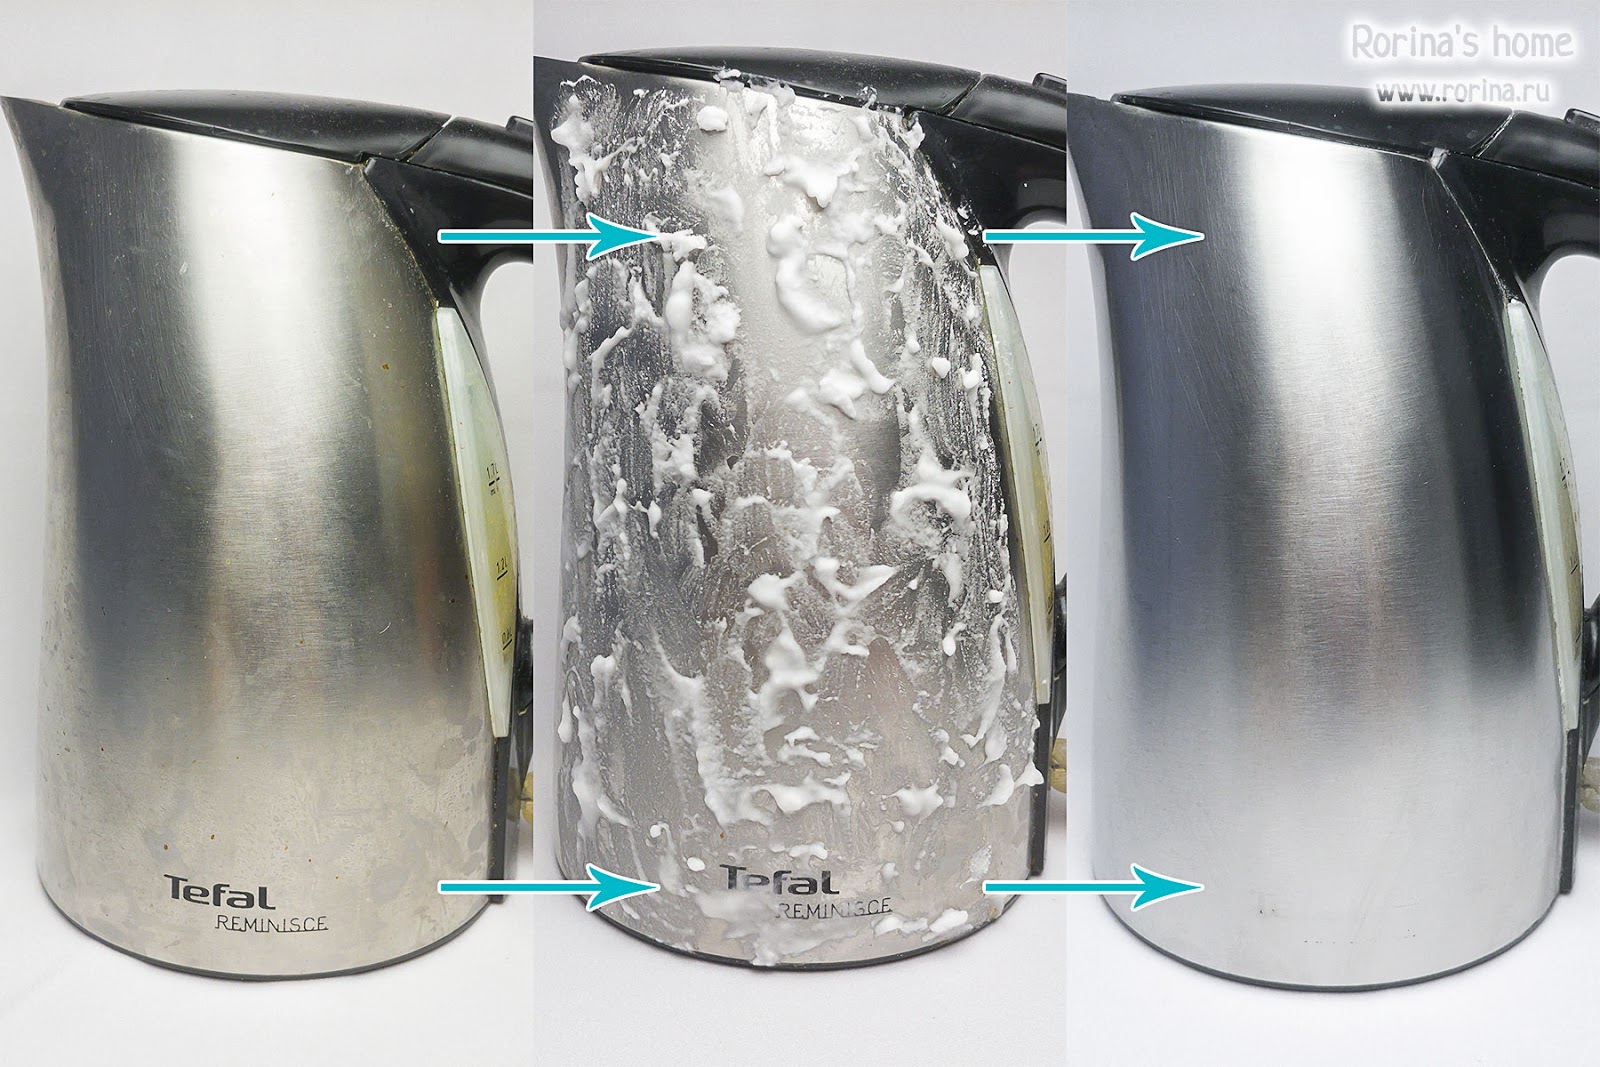 Как без усилий почистить чайник из нержавеющей стали внутри и снаружи?